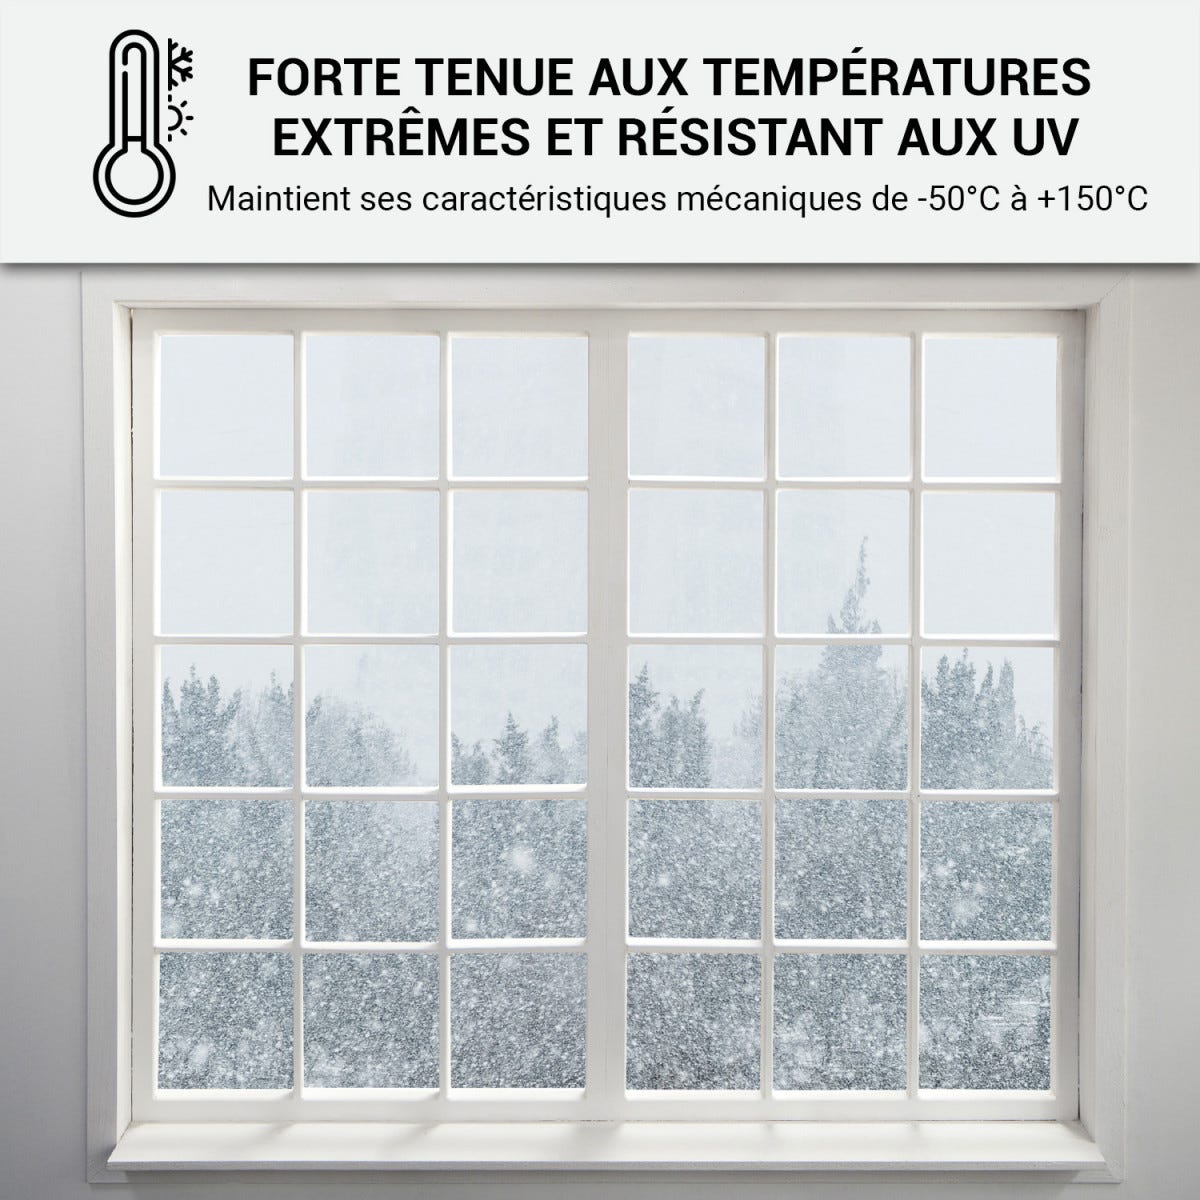 Mastic Silicone intérieur / extérieur pour fenêtres et menuiseries : ARCAMASTIC BATIMENT Blanc - 300 ml x 12ARCANE INDUSTRIES 3